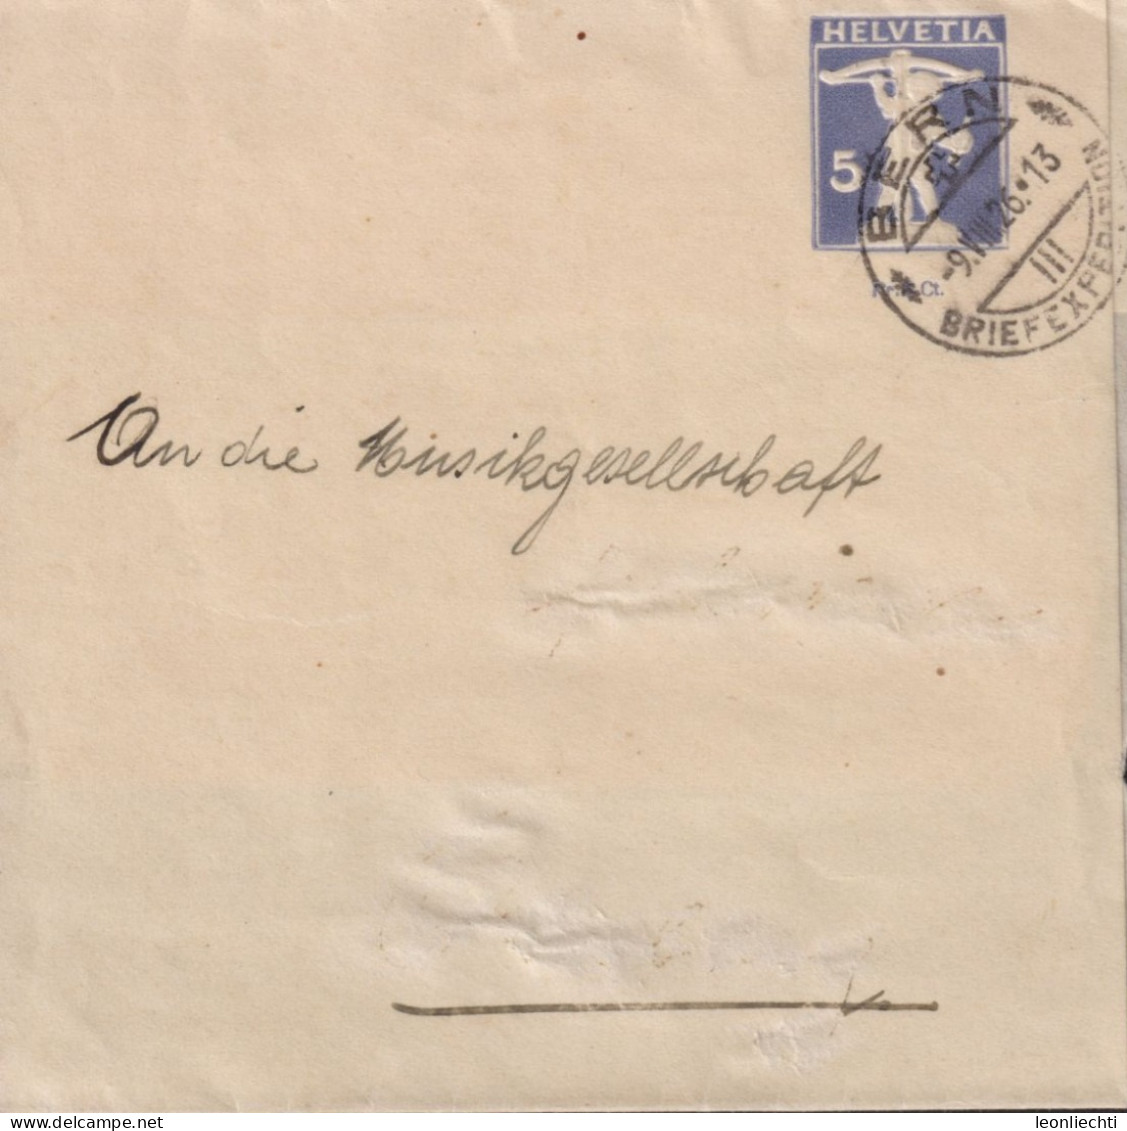 1926 Schweiz Streifband Zum: PrU 21 5 Cts Grauviolett, Tell Knabe ⵙ BERN BRIEFEXPEDITION 9.Vlll.26 - Enteros Postales